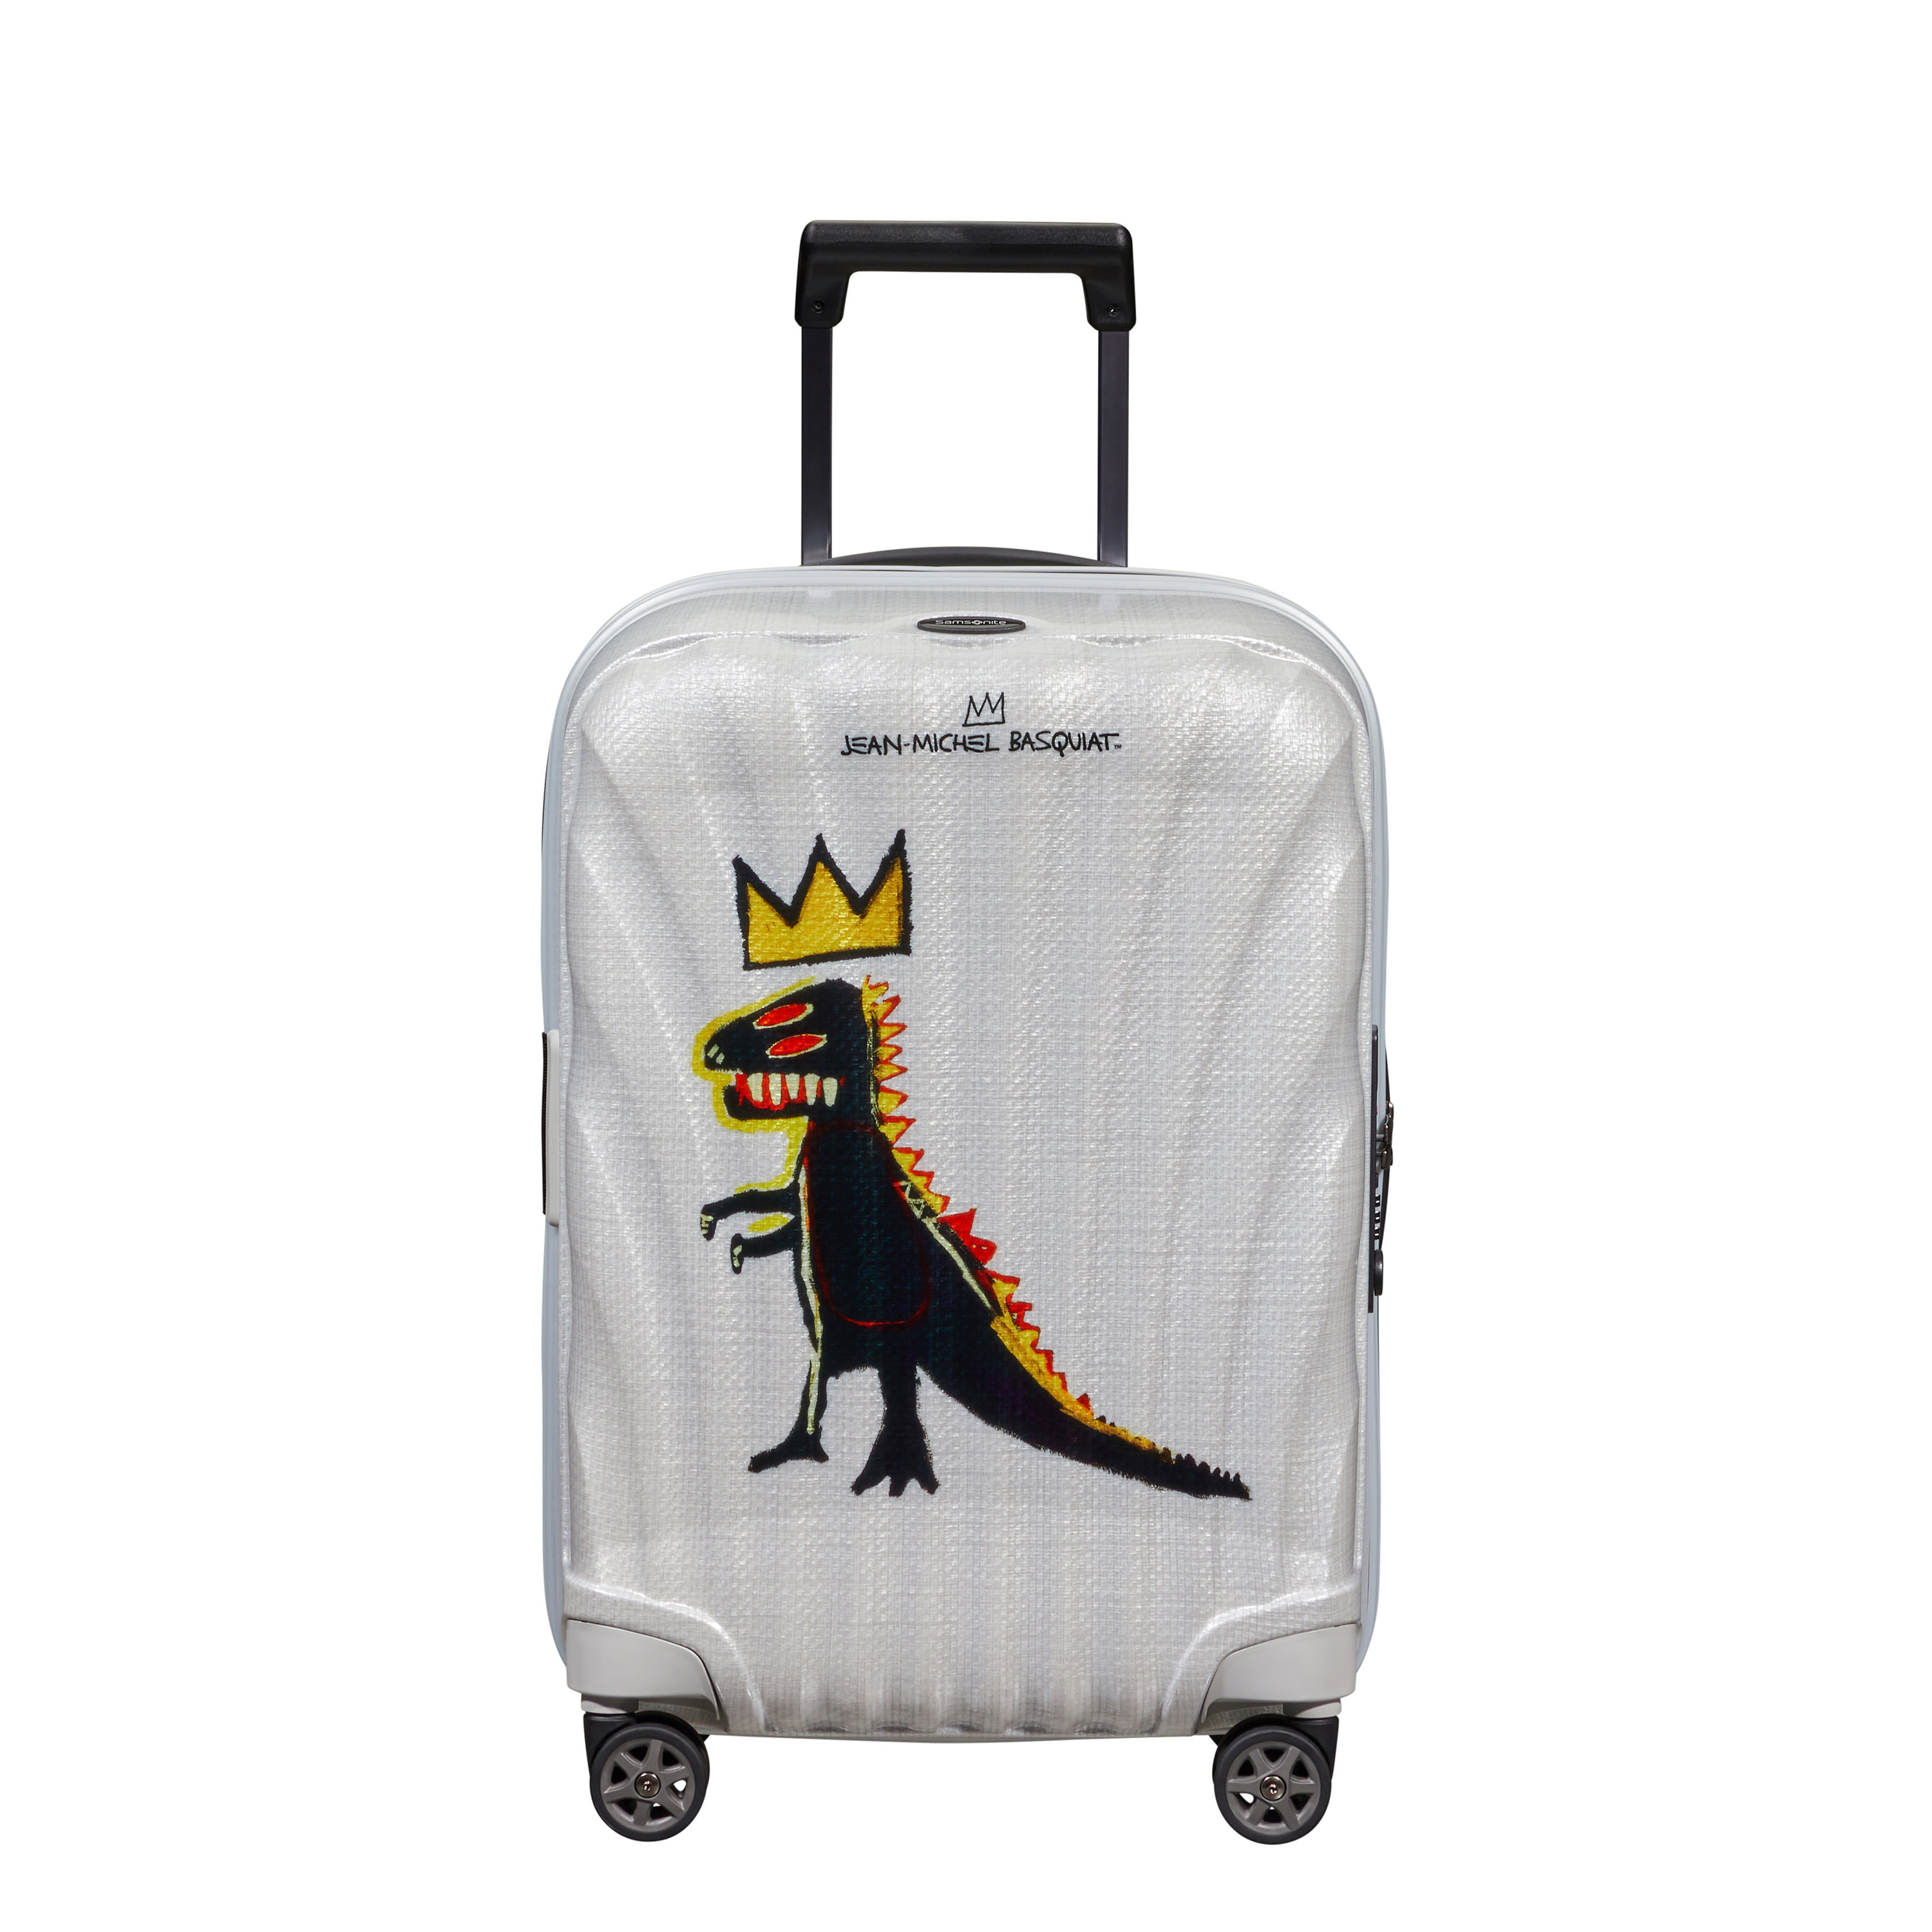 samsonite x jean-michel basquiat luggage pieces, pez dispenser design